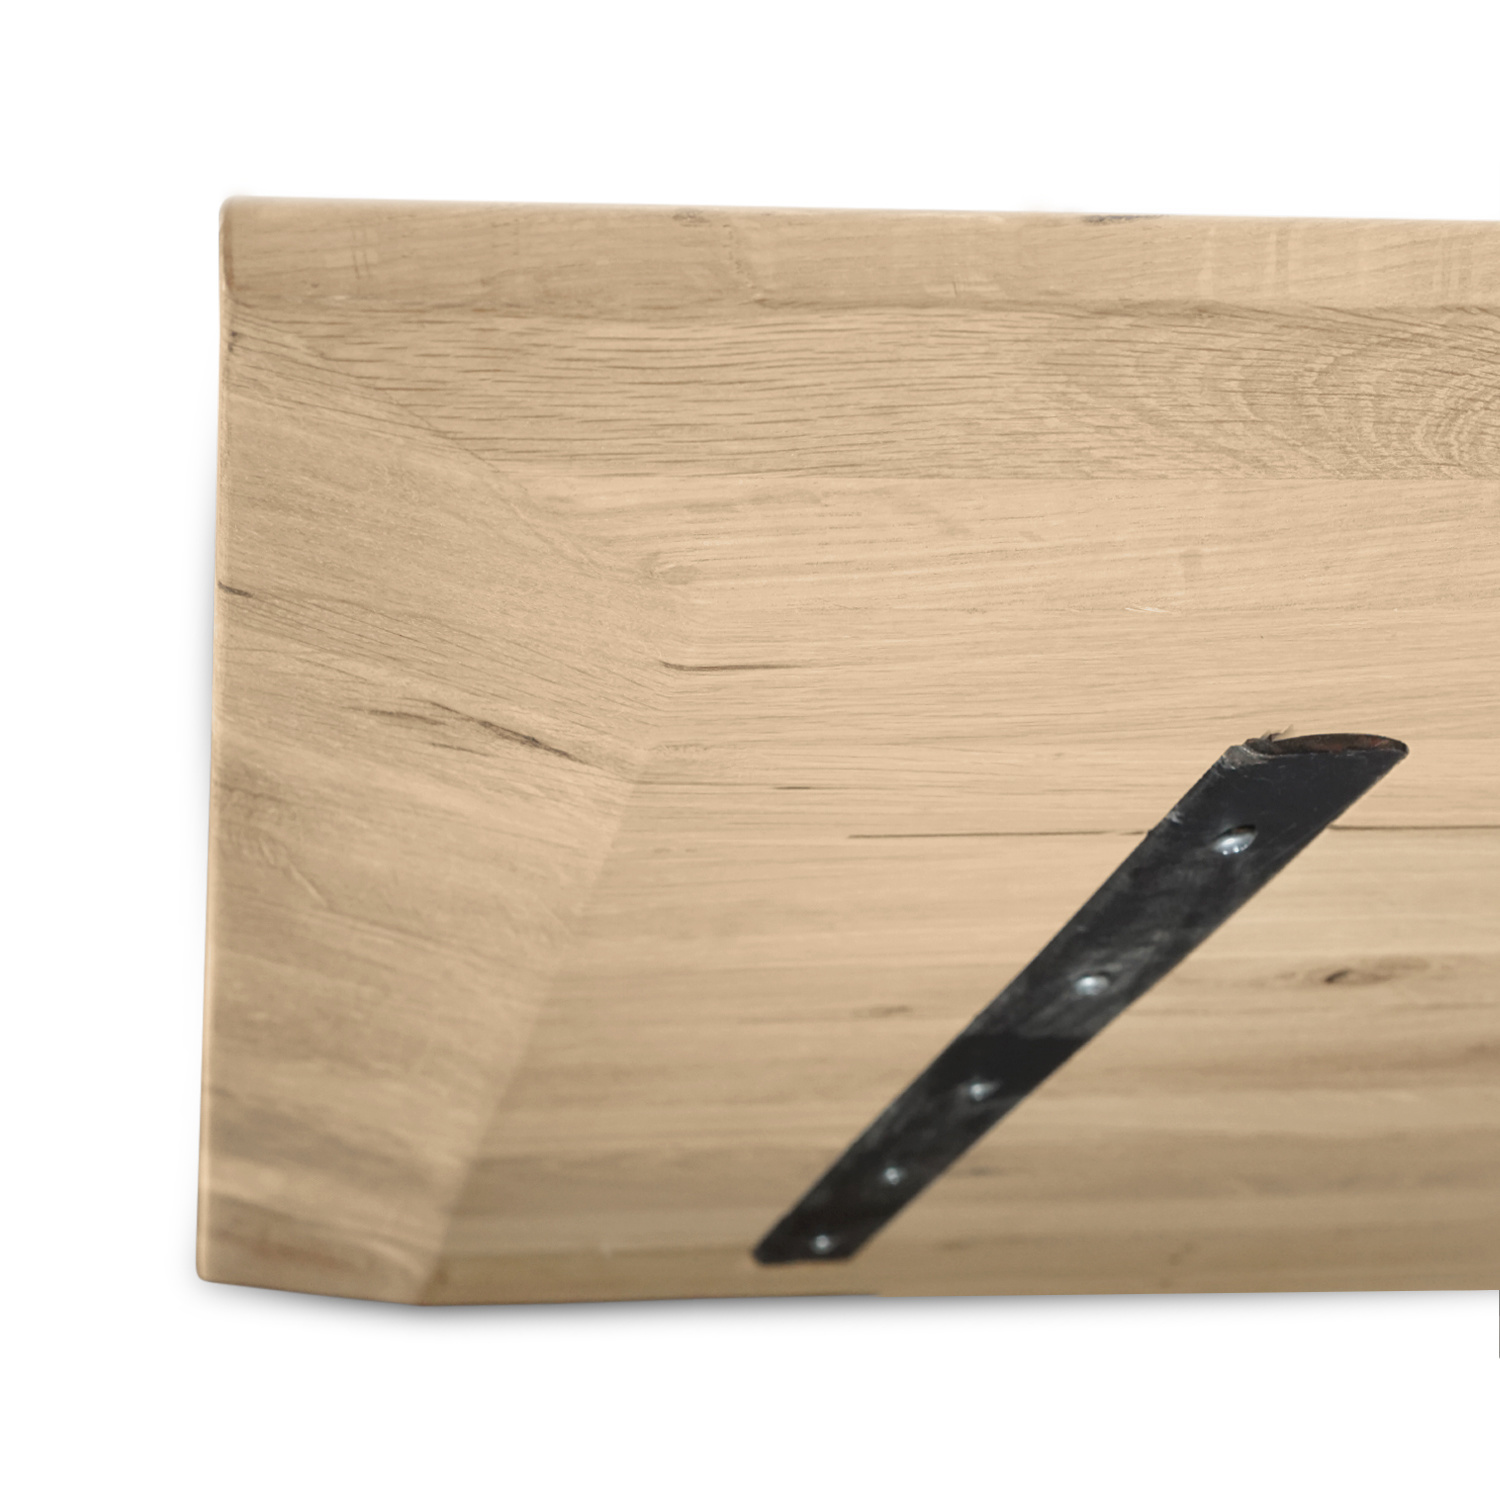  Eiken tafelblad verjongd op maat - 4 cm dik (1-laag) - rustiek Europees eikenhout - met brede lamellen (circa 14-20 cm) - verlijmd kd 8-12% - 40-117x80-247 cm